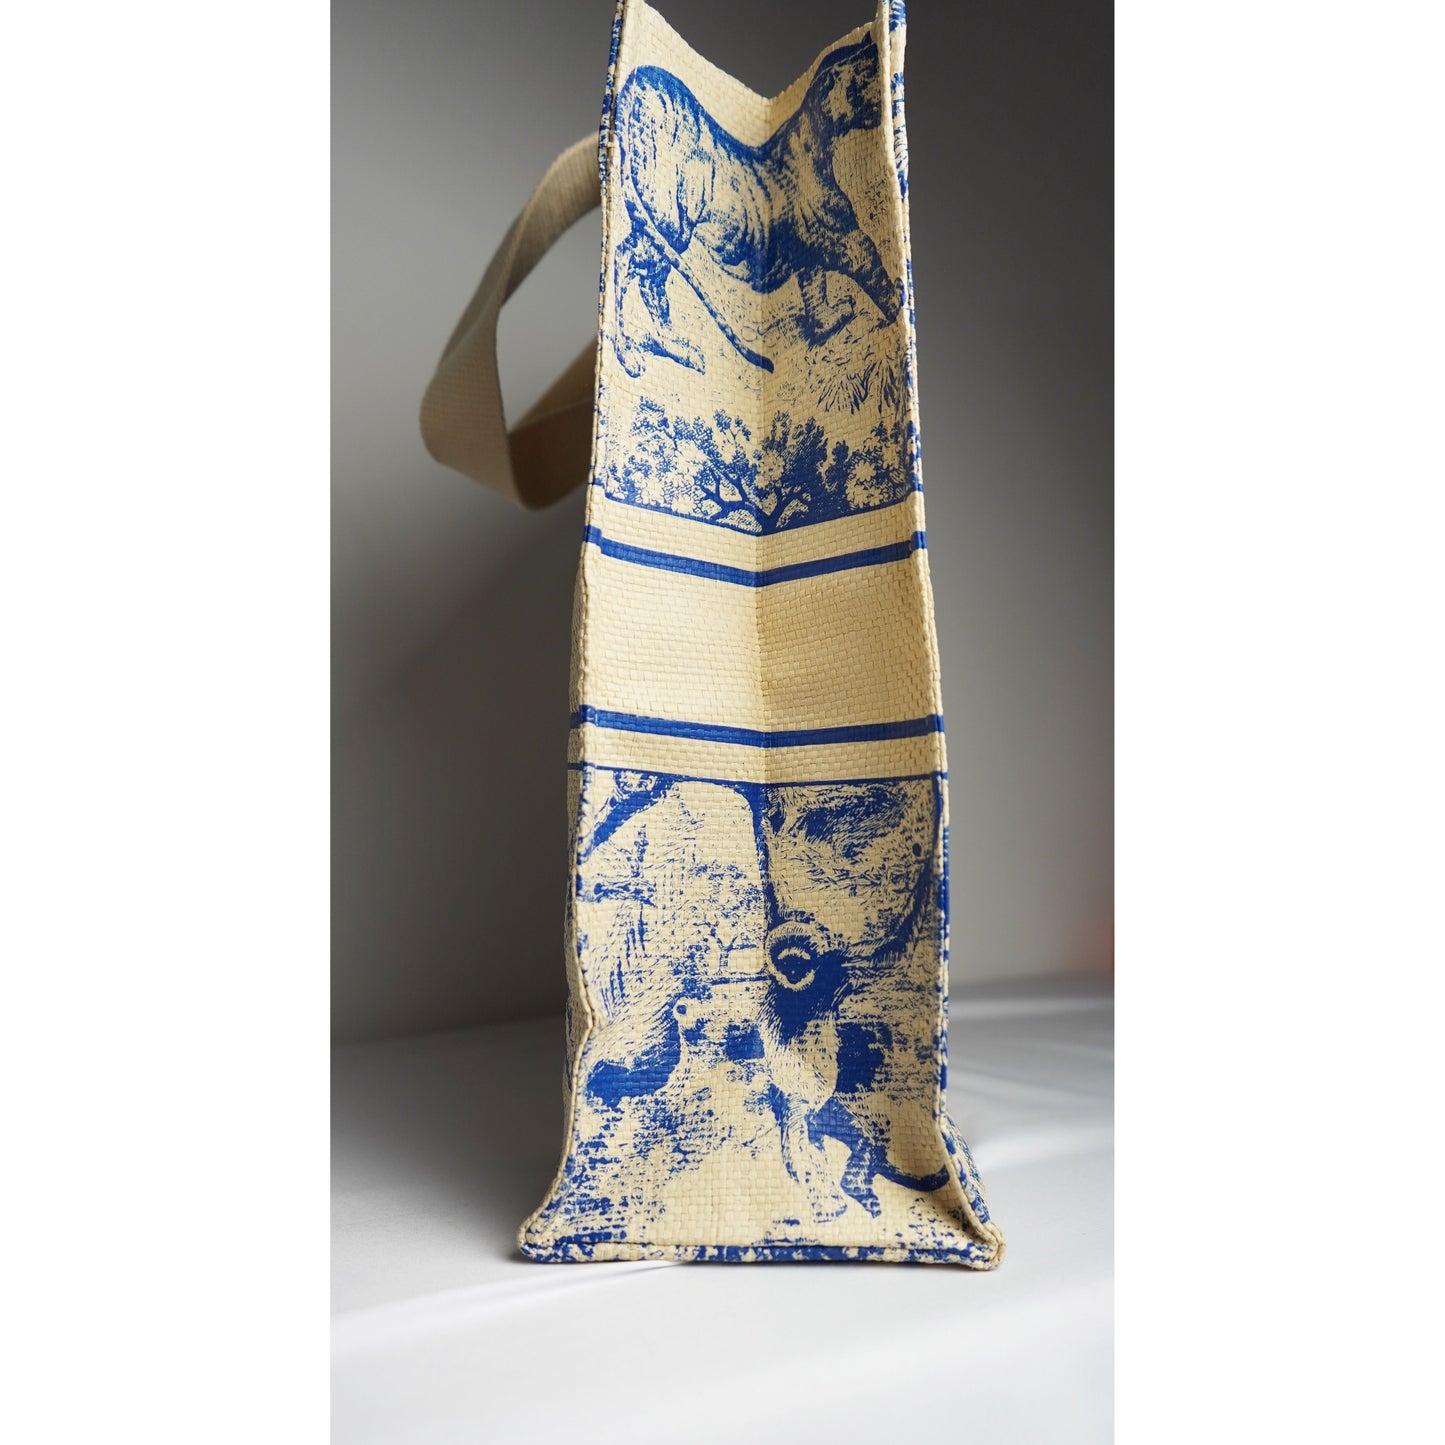 DIOR Dioriviera straw tote bag with toile de Jouy print